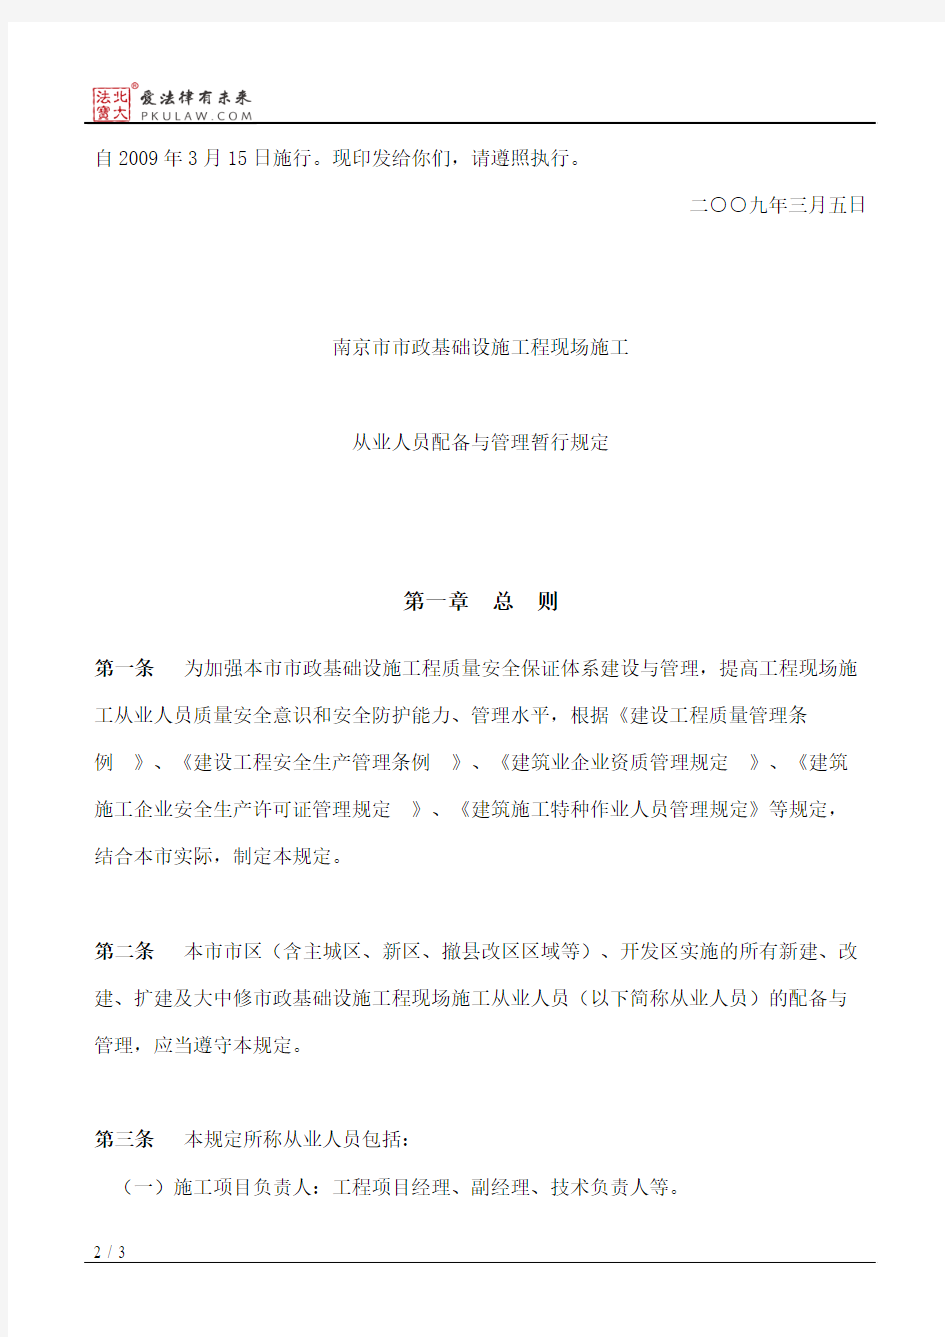 南京市建设委员会、南京市市政公用局关于印发《南京市市政基础设